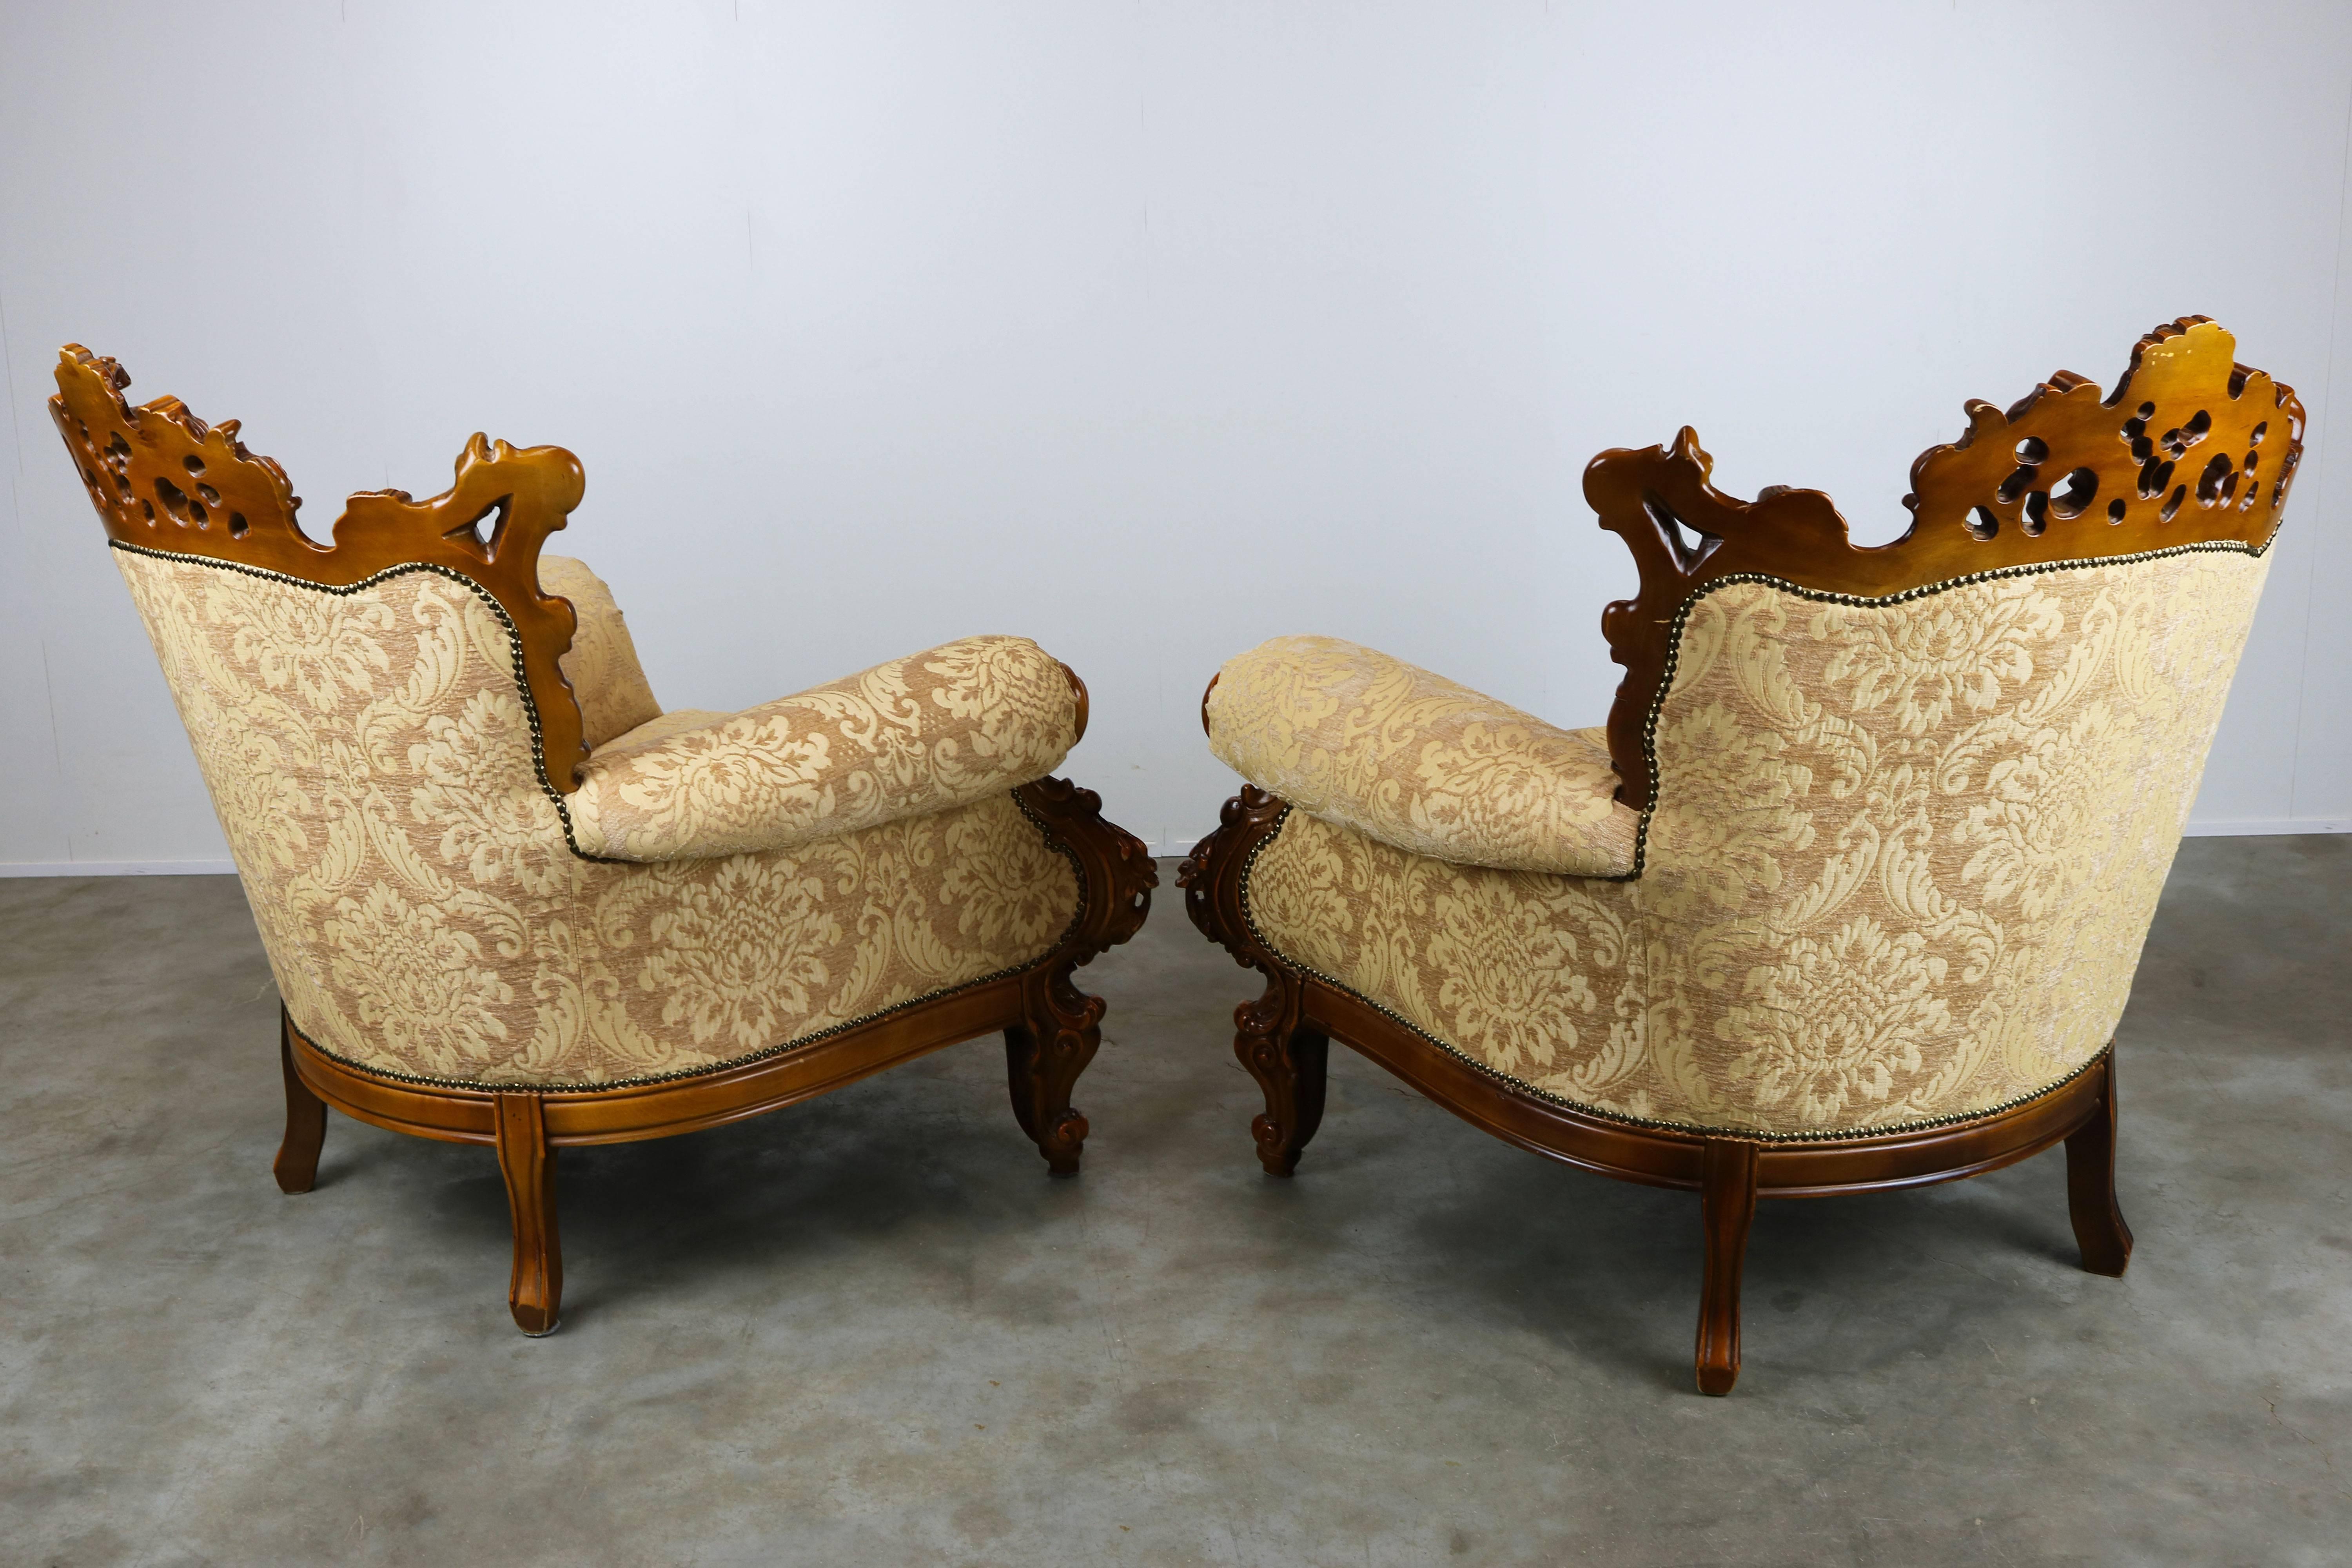 antique italian furniture styles